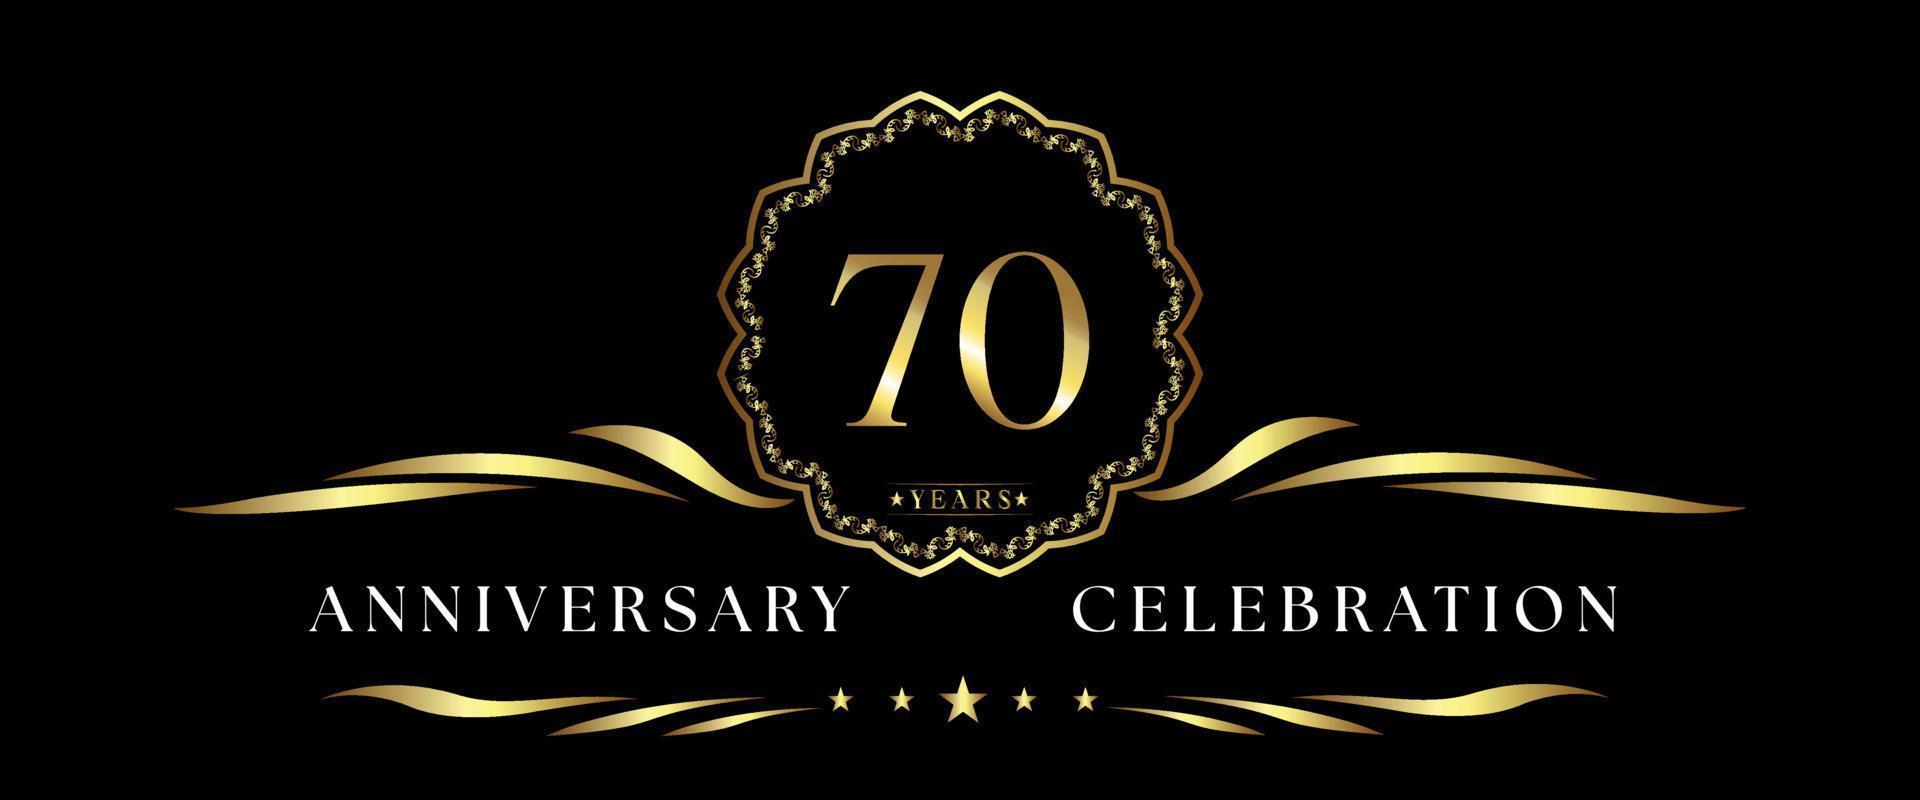 Célébration du 70e anniversaire avec cadre décoratif doré isolé sur fond noir. création vectorielle pour carte de voeux, fête d'anniversaire, mariage, fête d'événement, cérémonie. Logo anniversaire 70 ans. vecteur